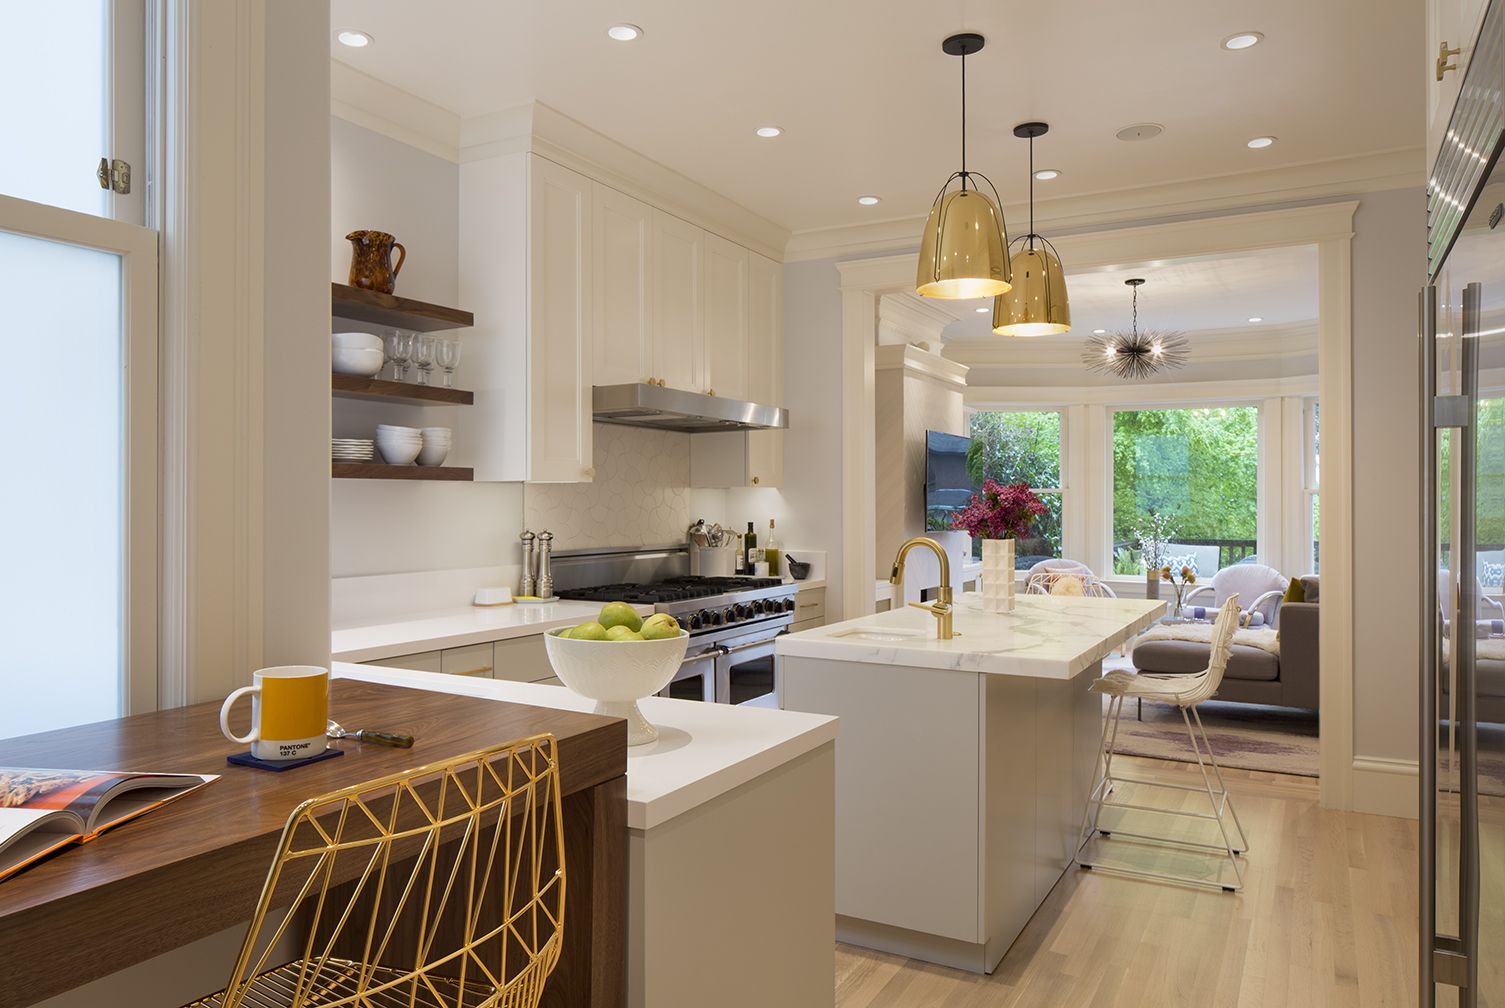 Best 25+ White kitchen designs ideas on Pinterest | White diy ...